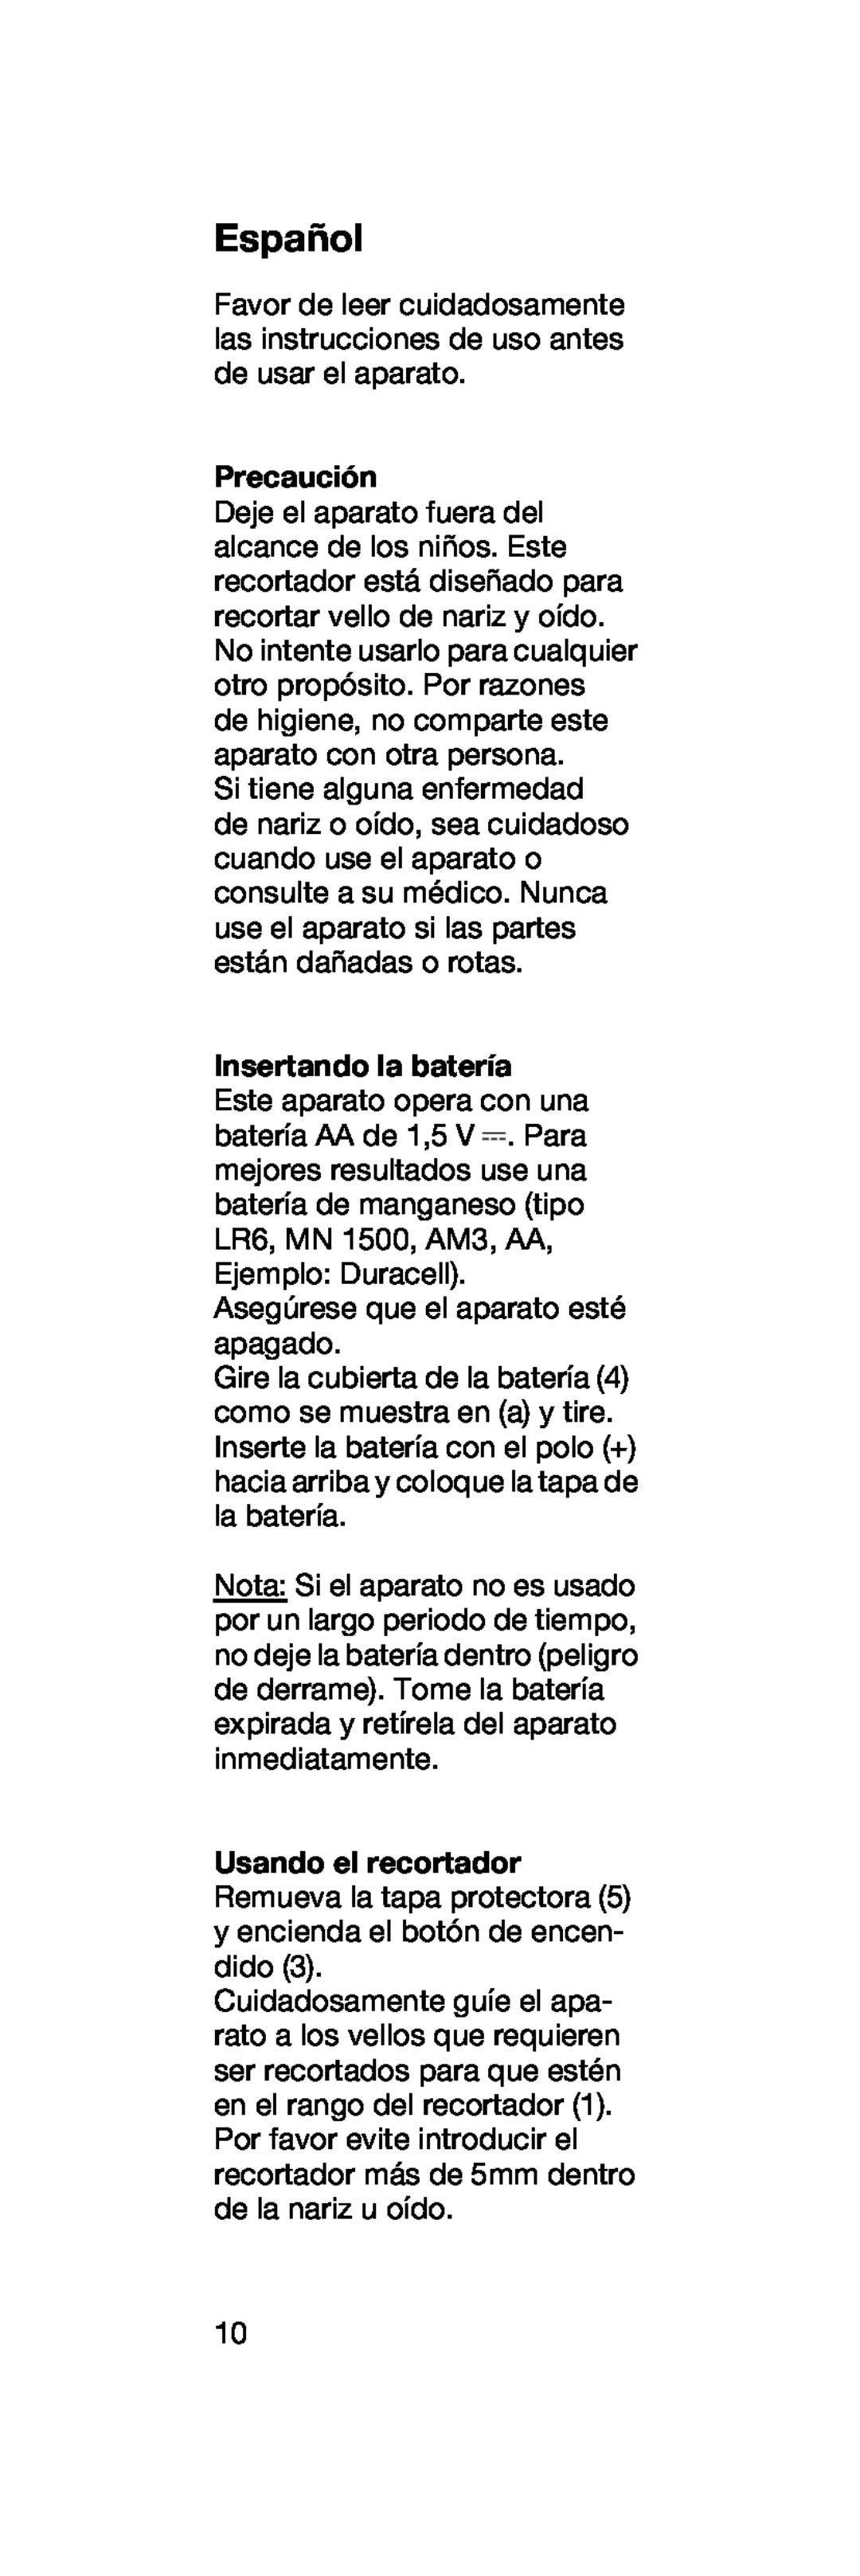 Braun EN 10 manual Español, Precaución, Insertando la batería 